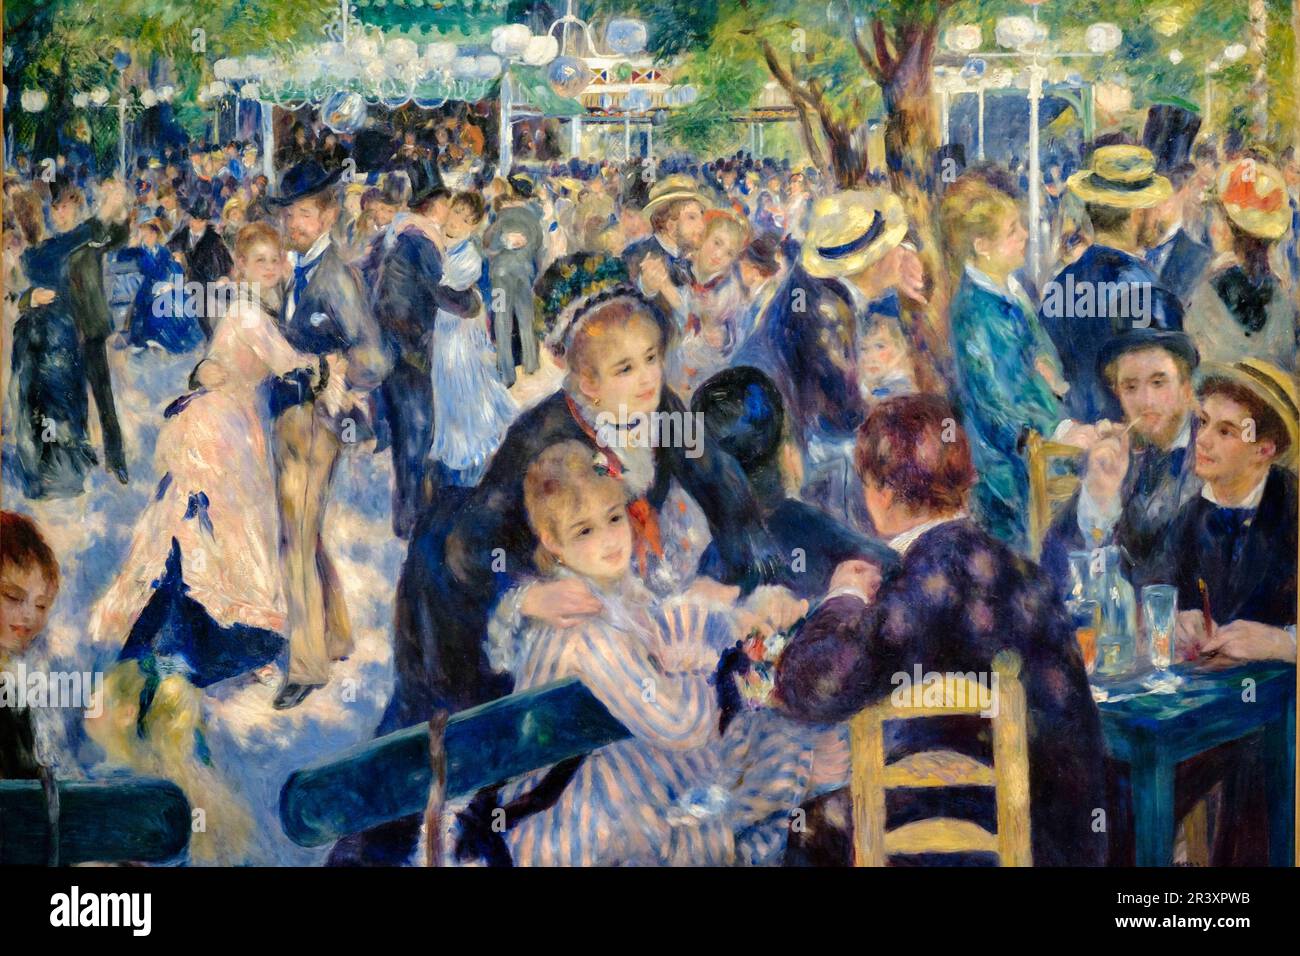 Auguste Renoir (1841-1919), . El baile del molino de la Galette, . 1876, . Óleo sobre lienzo, Museo de Orsay, Ministerio de Cultura y Comunicación Francés, Paris, France,Western Europe. Stock Photo